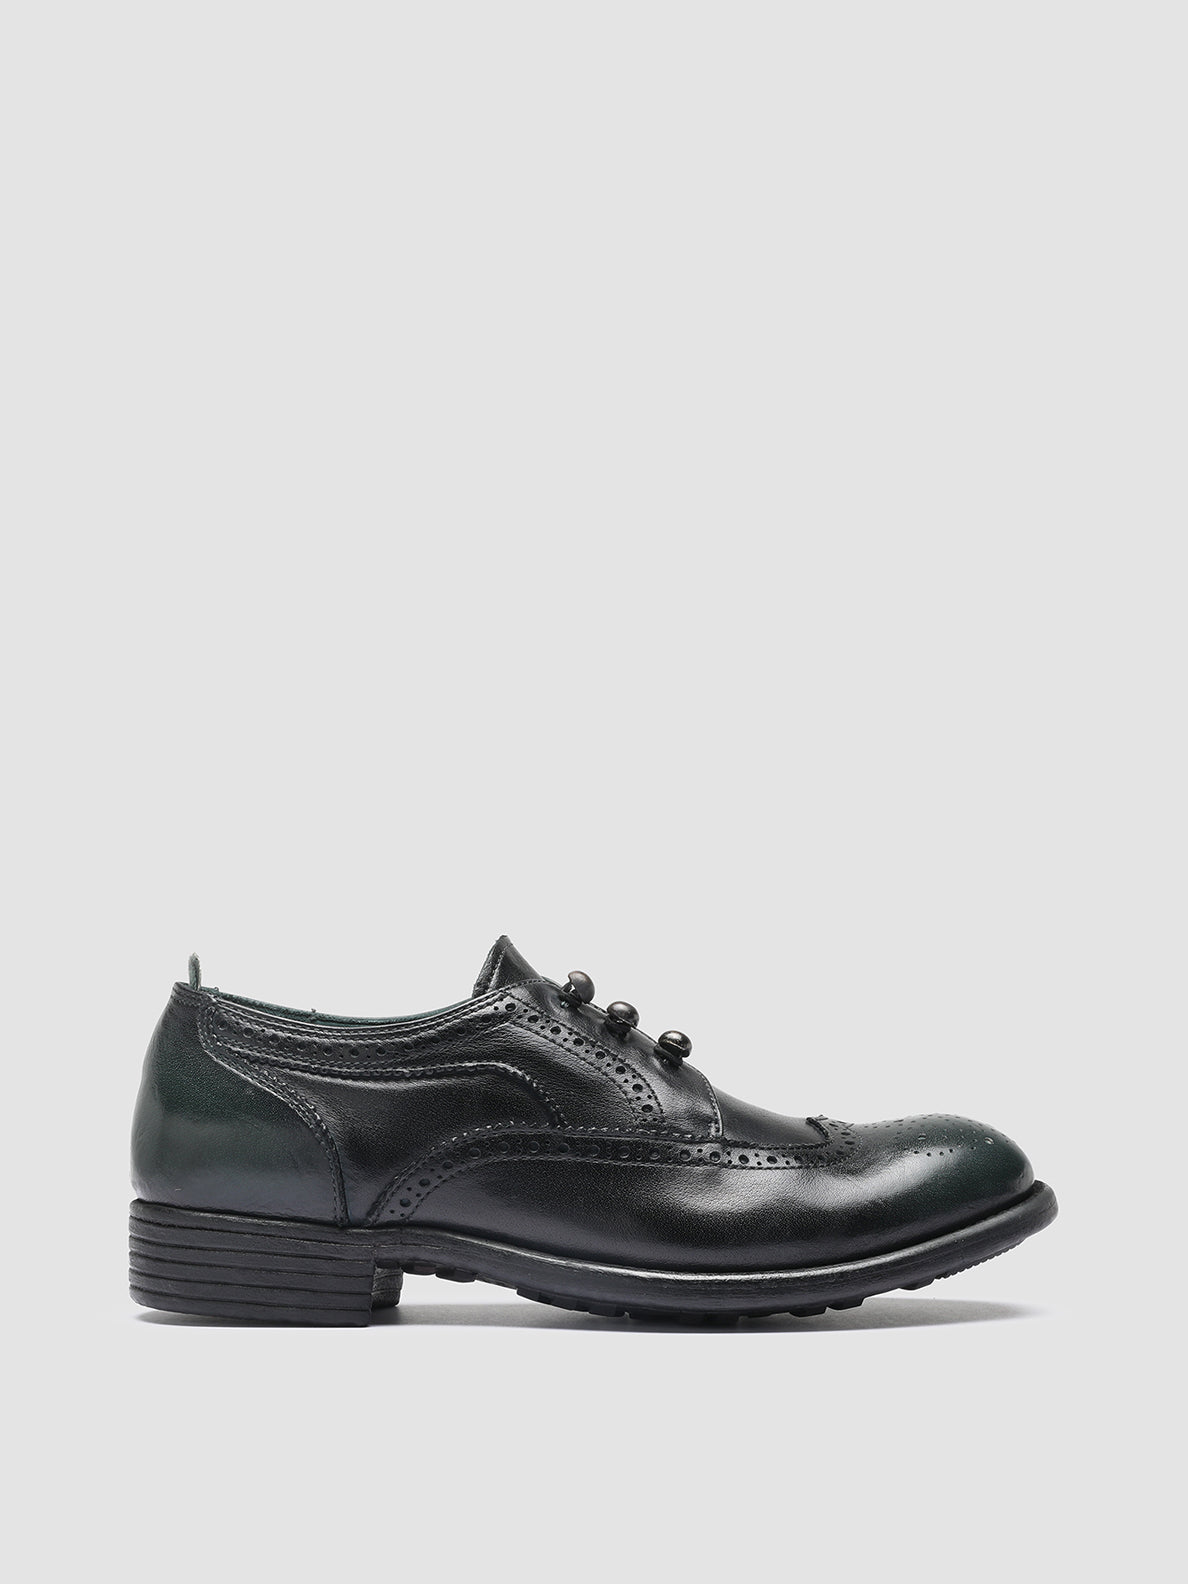 Women's Black Derby Shoes CALIXTE 035 – Officine Creative EU